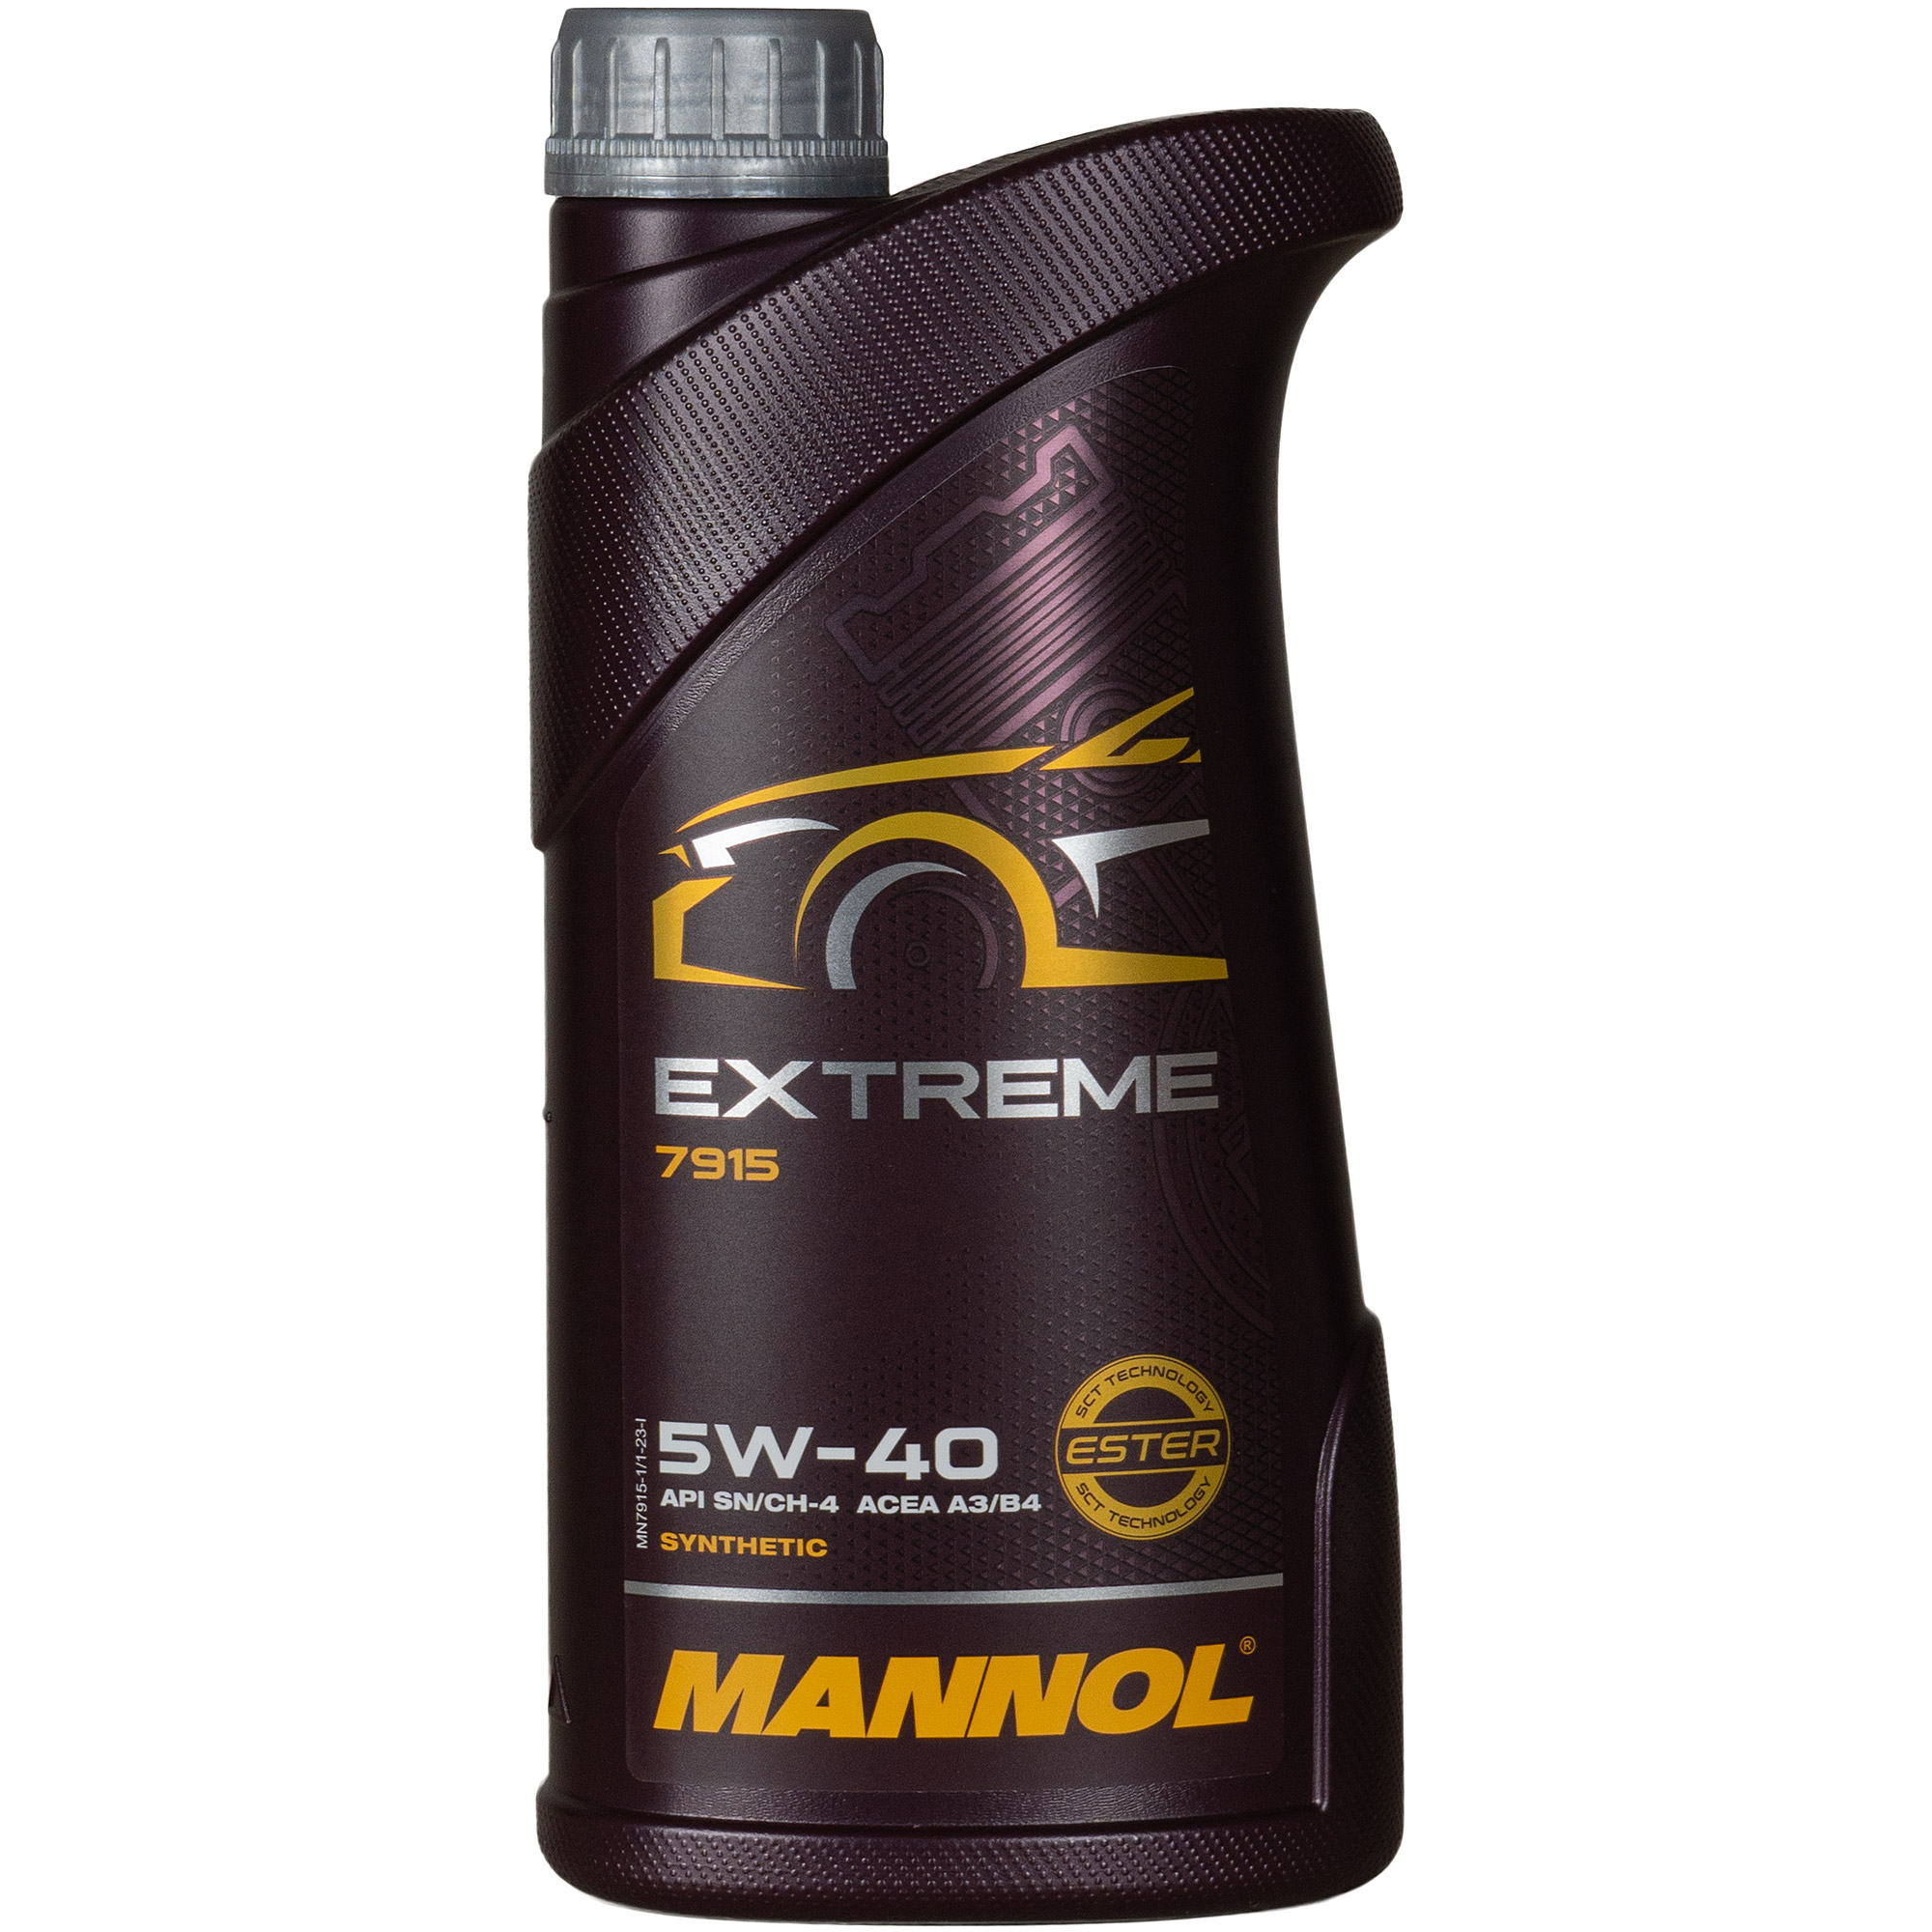  MANNOL 1x1 Liter Extreme 5W-40 API SN/CF Öl Motoröl MN7915-1